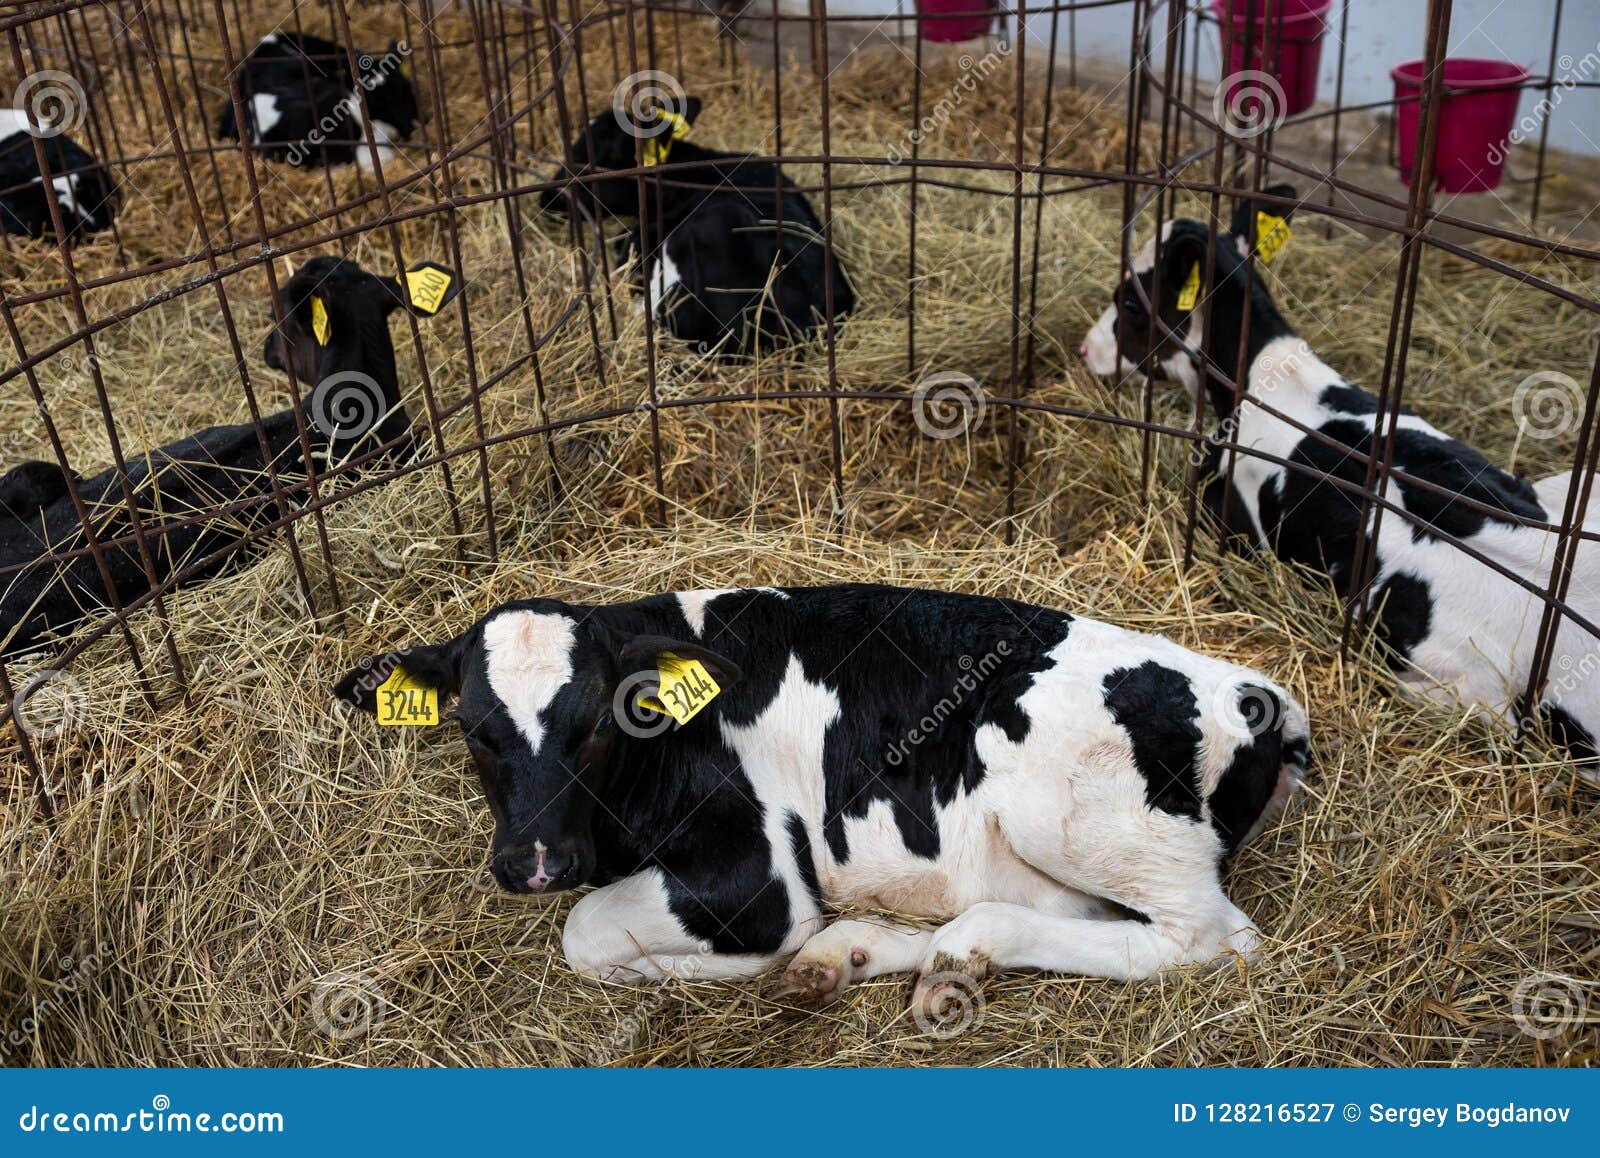 Μόσχοι σε ένα αγρόκτημα. Οι χαριτωμένοι νέοι μόσχοι βρίσκονται στο σανό στο σταύλο στο γαλακτοκομικό αγρόκτημα Βιομηχανία γεωργίας, καλλιέργεια και κτηνοτροφική παραγωγή